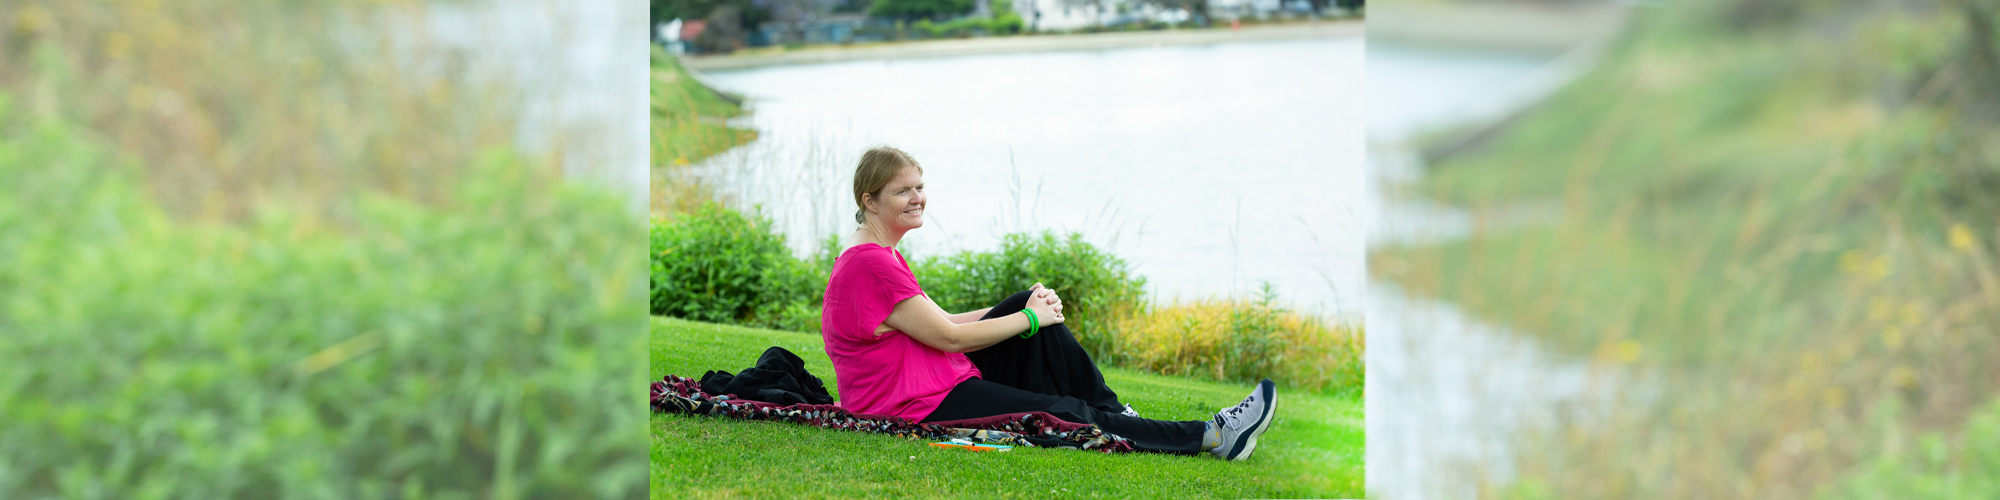 woman sitting on grass near lake